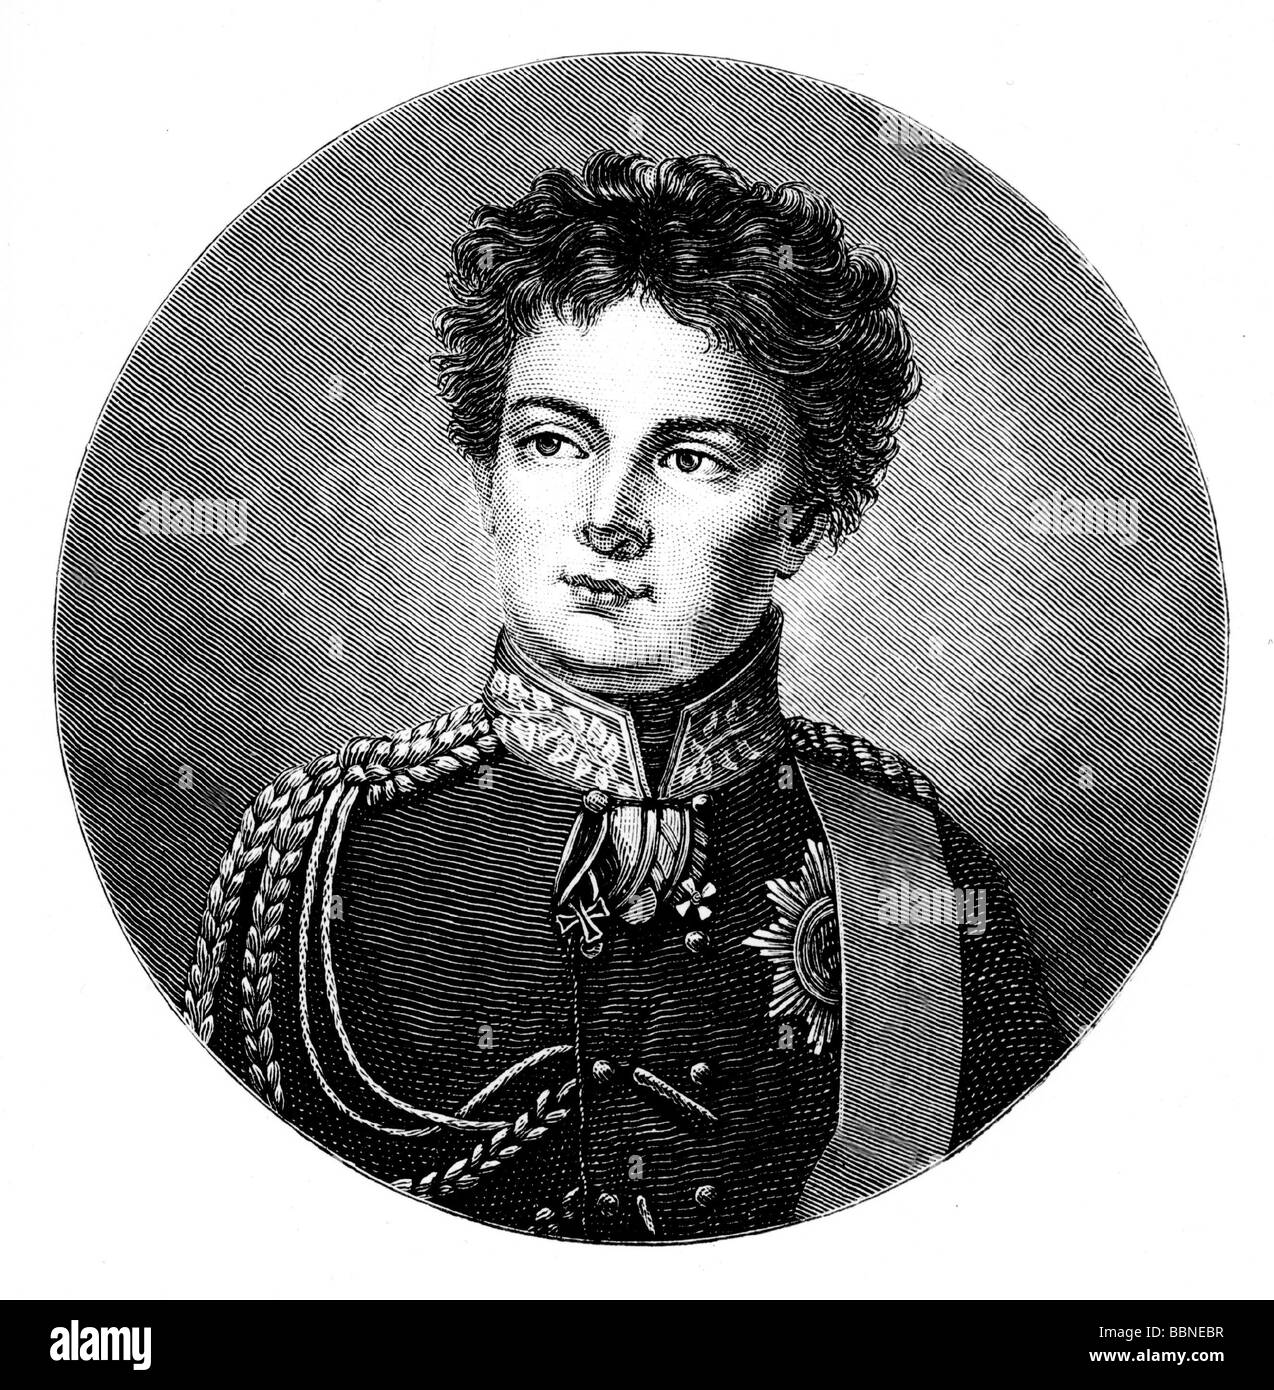 Friedrich Wilhelm IV., 15.10.95 - 2.1.1861, König von Preßburg 7.6.1840 - 26.10.1858, Porträt, 25 Jahre alt, als Prinz der Krone, 188, Stockfoto